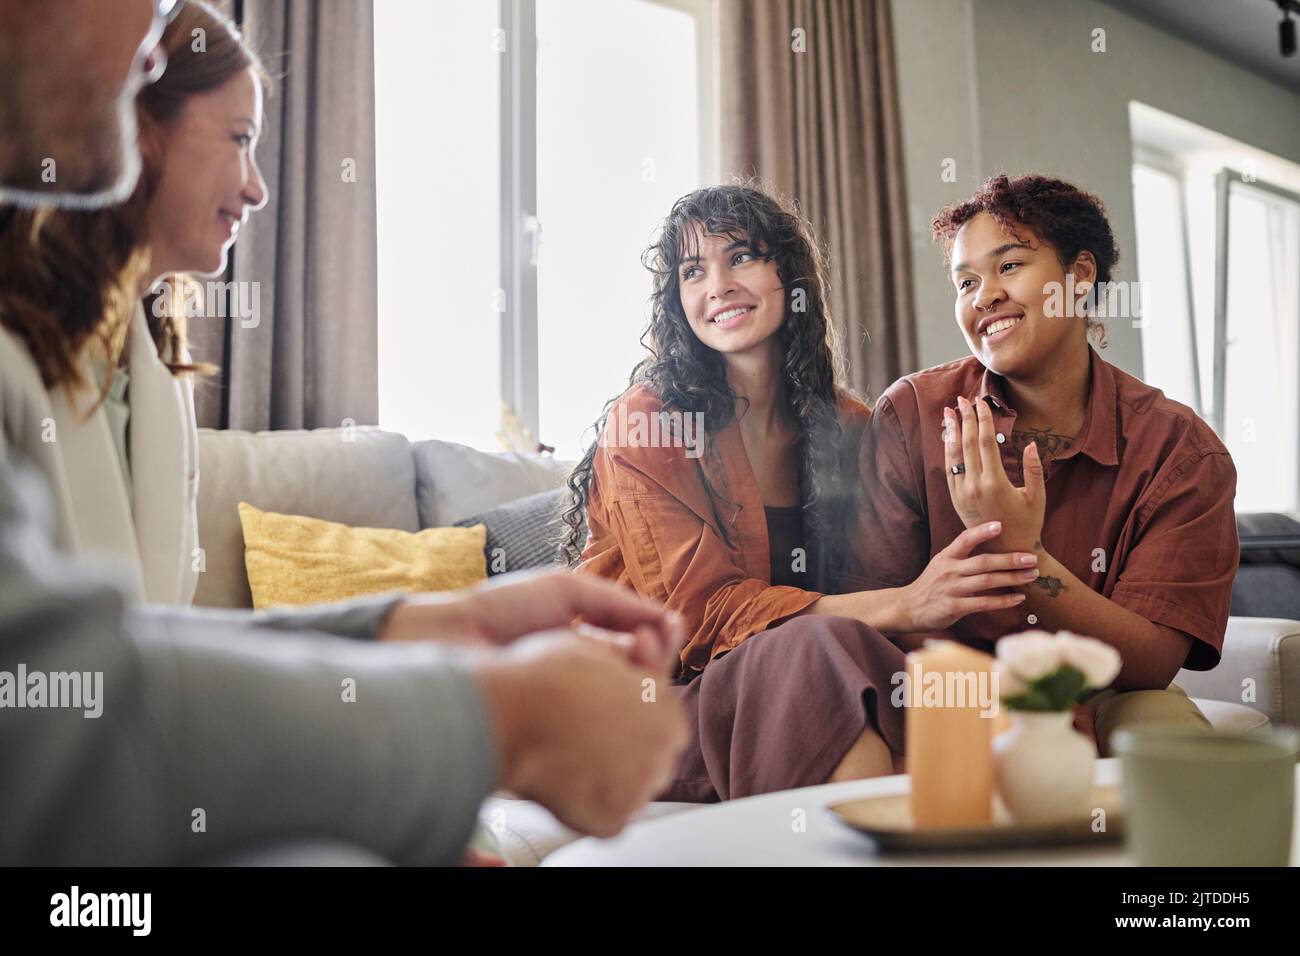 Glückliche junge, multiethnische Frau, die einen Verlobungsring am Finger zeigt, während sie im Wohnzimmer mit den Eltern ihrer Freundin spricht Stockfoto